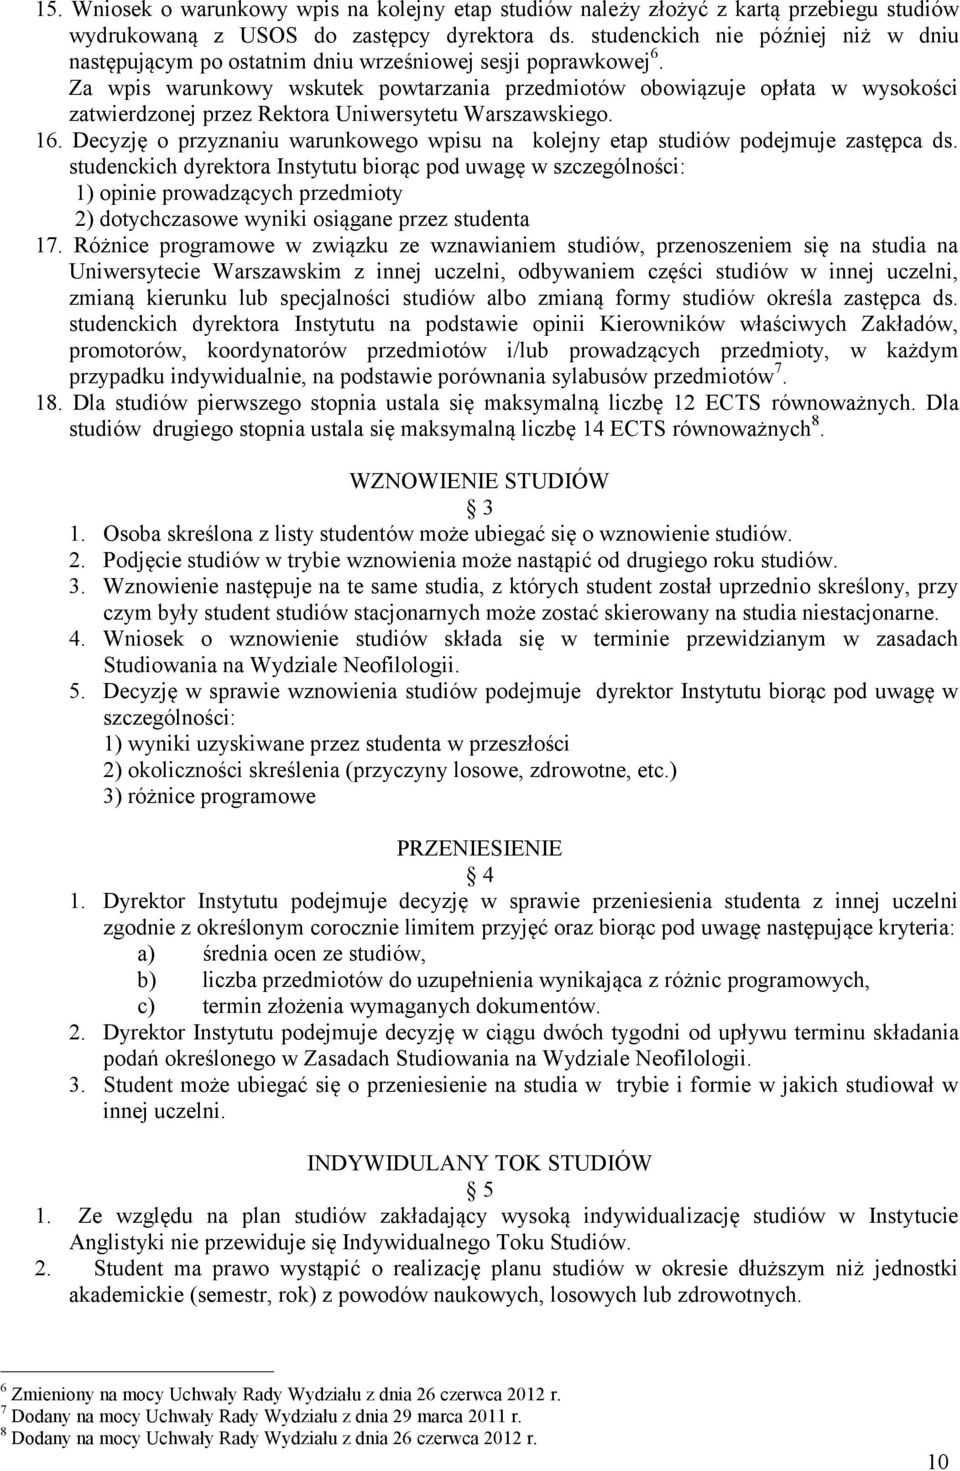 Za wpis warunkowy wskutek powtarzania przedmiotów obowiązuje opłata w wysokości zatwierdzonej przez Rektora Uniwersytetu Warszawskiego. 16.